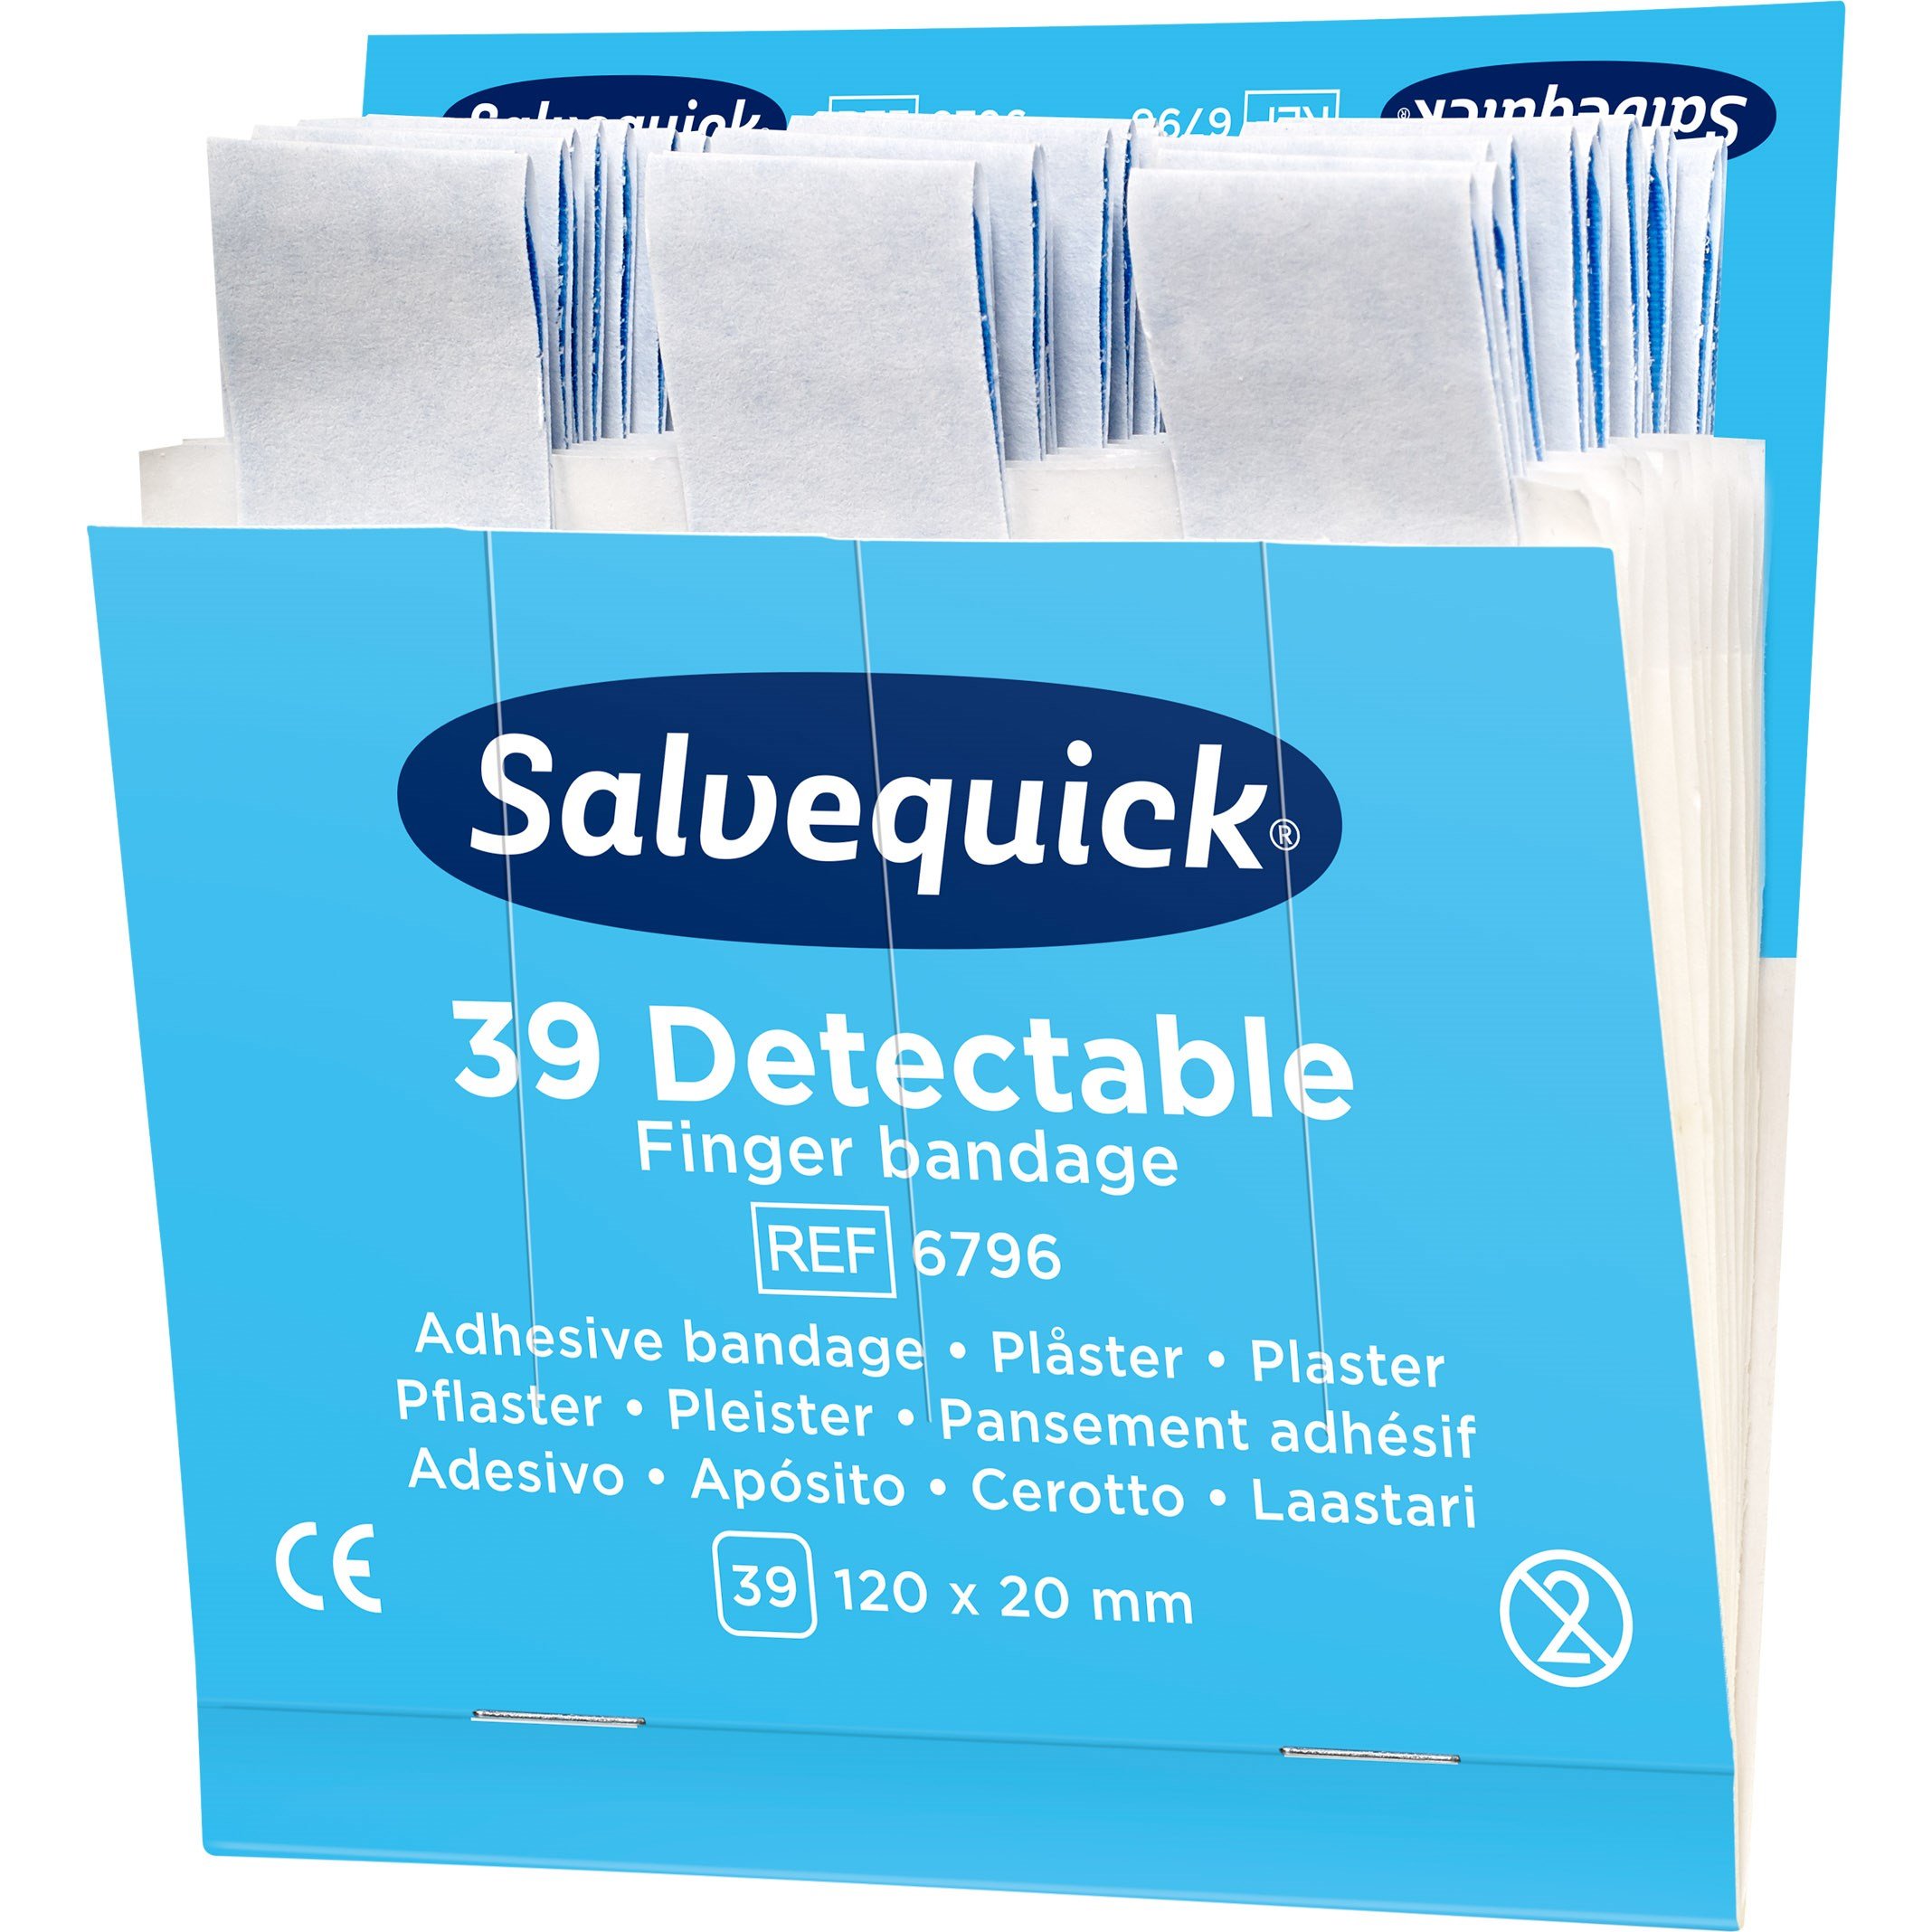 Bedste Salvequick Bandage i 2023